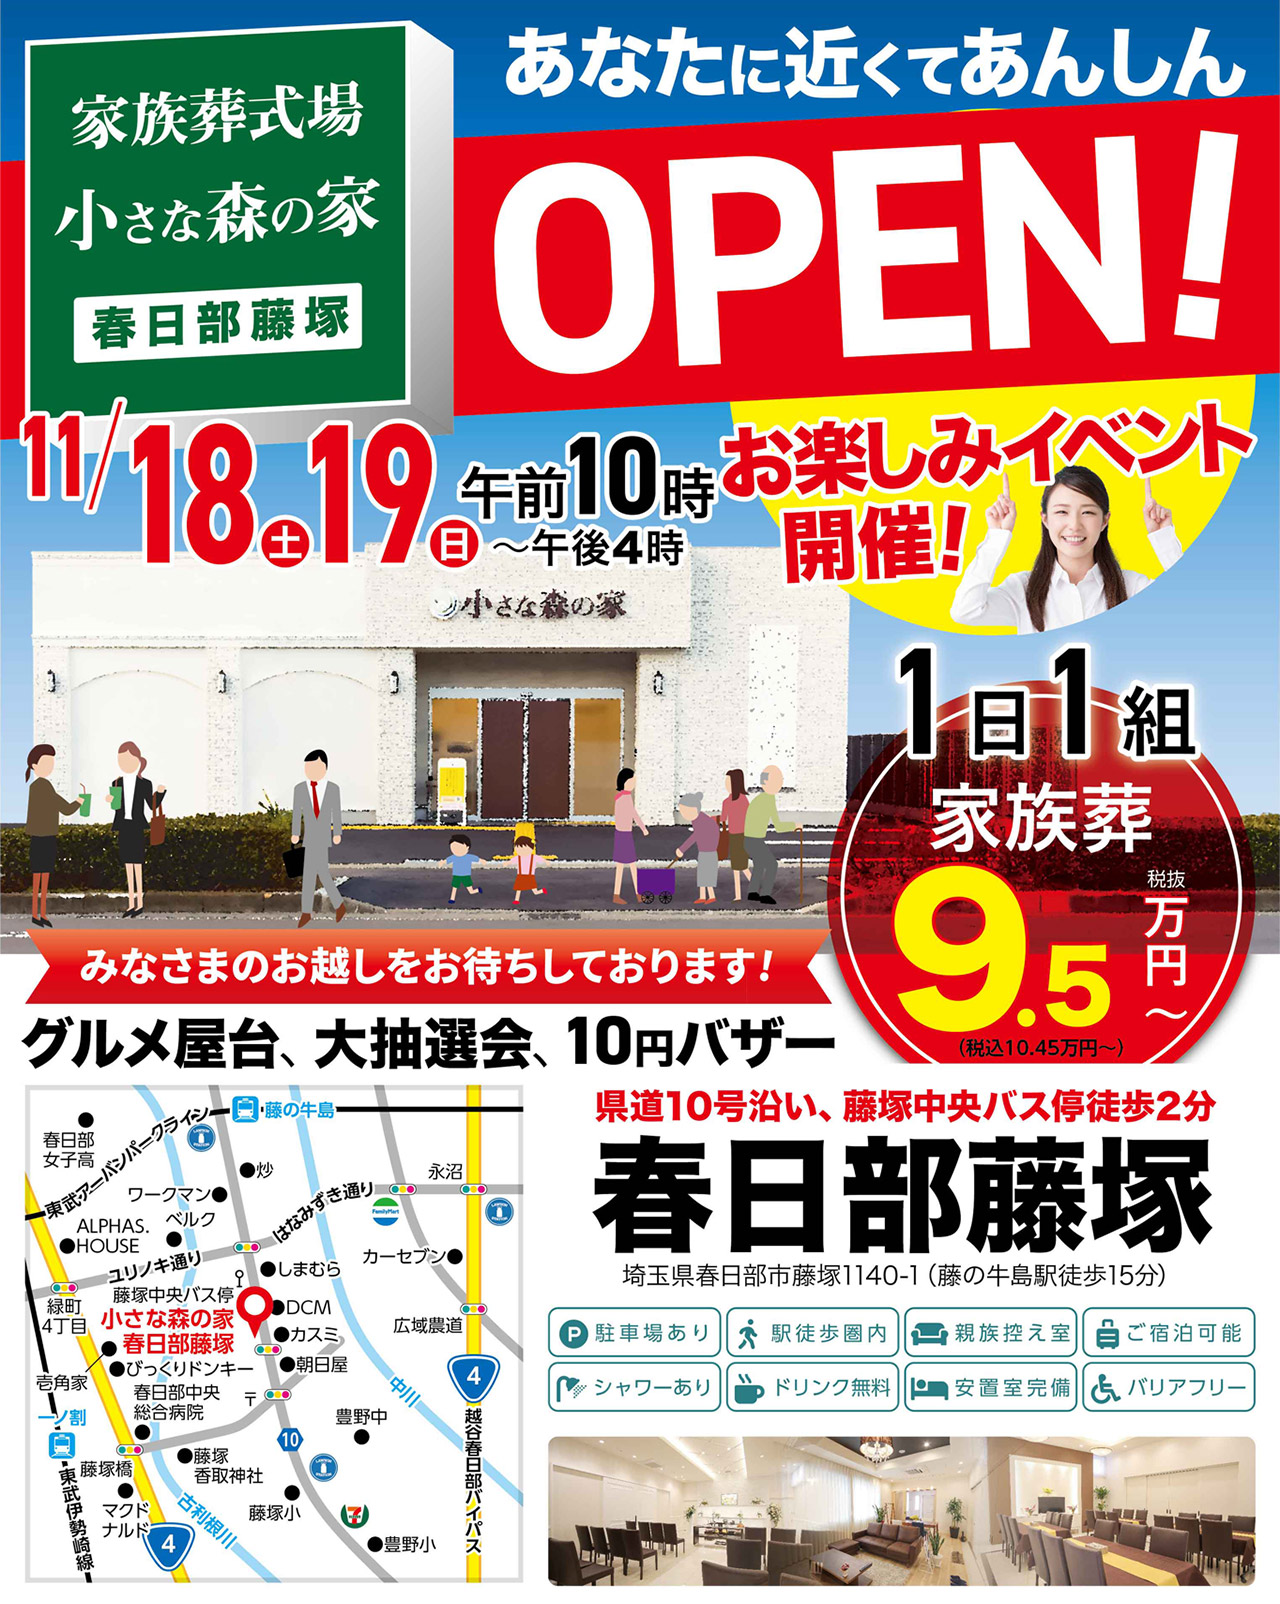 9月23日（土）24日（日）に吉川いちょう通りでオープンイベント開催！のイメージ画像